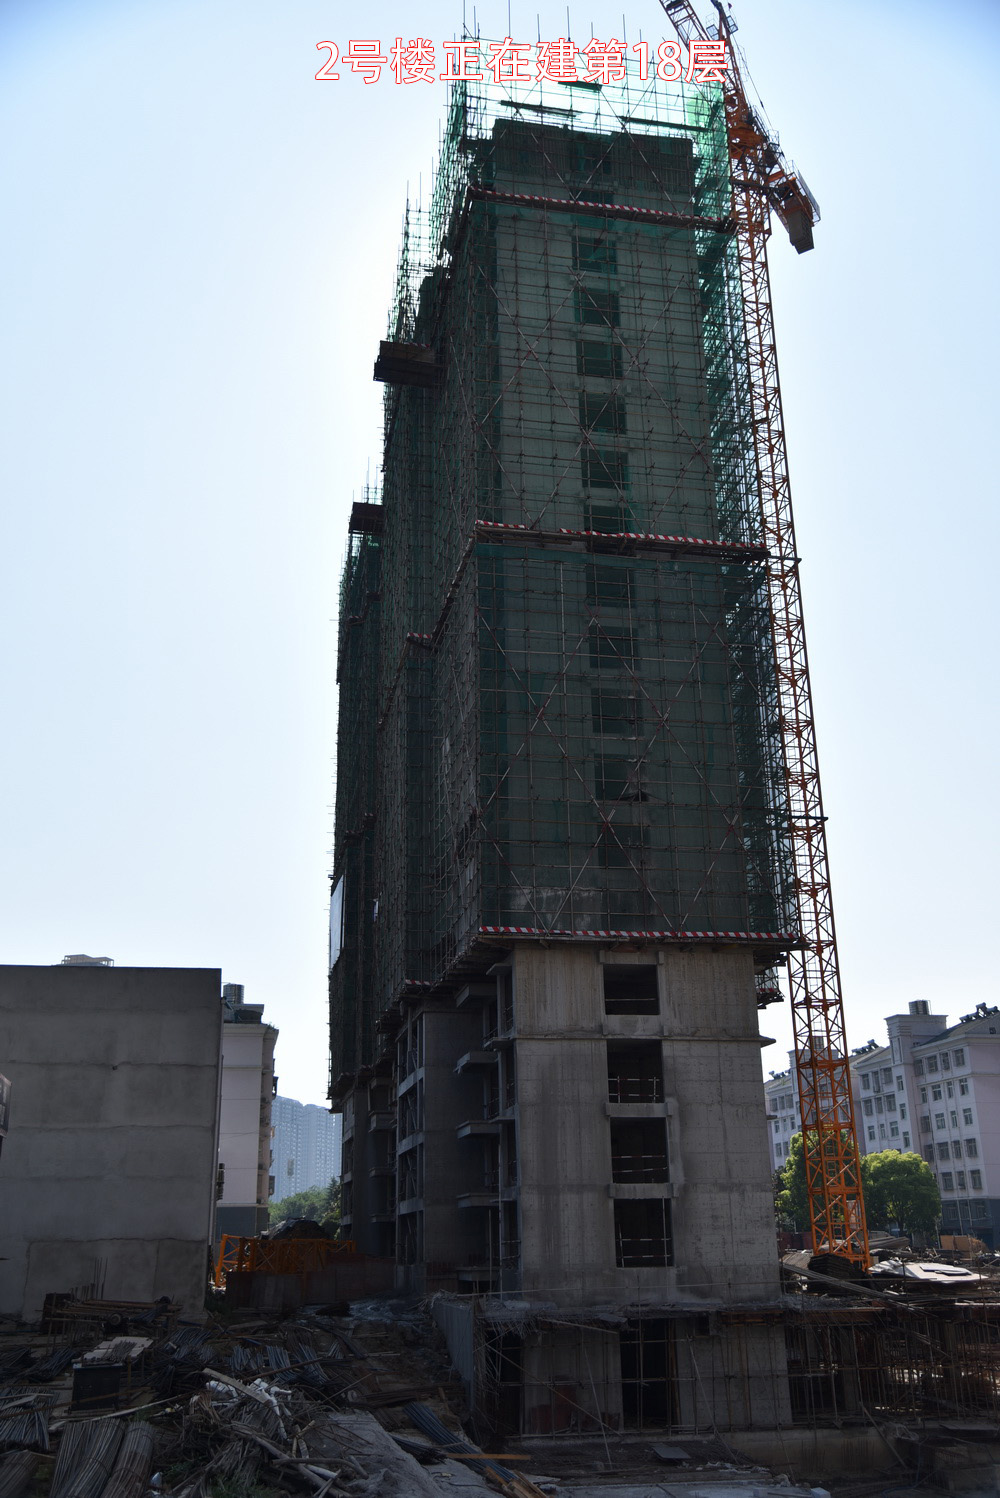 碧水园·长宿2018-8工程进度2号楼正在建第18层